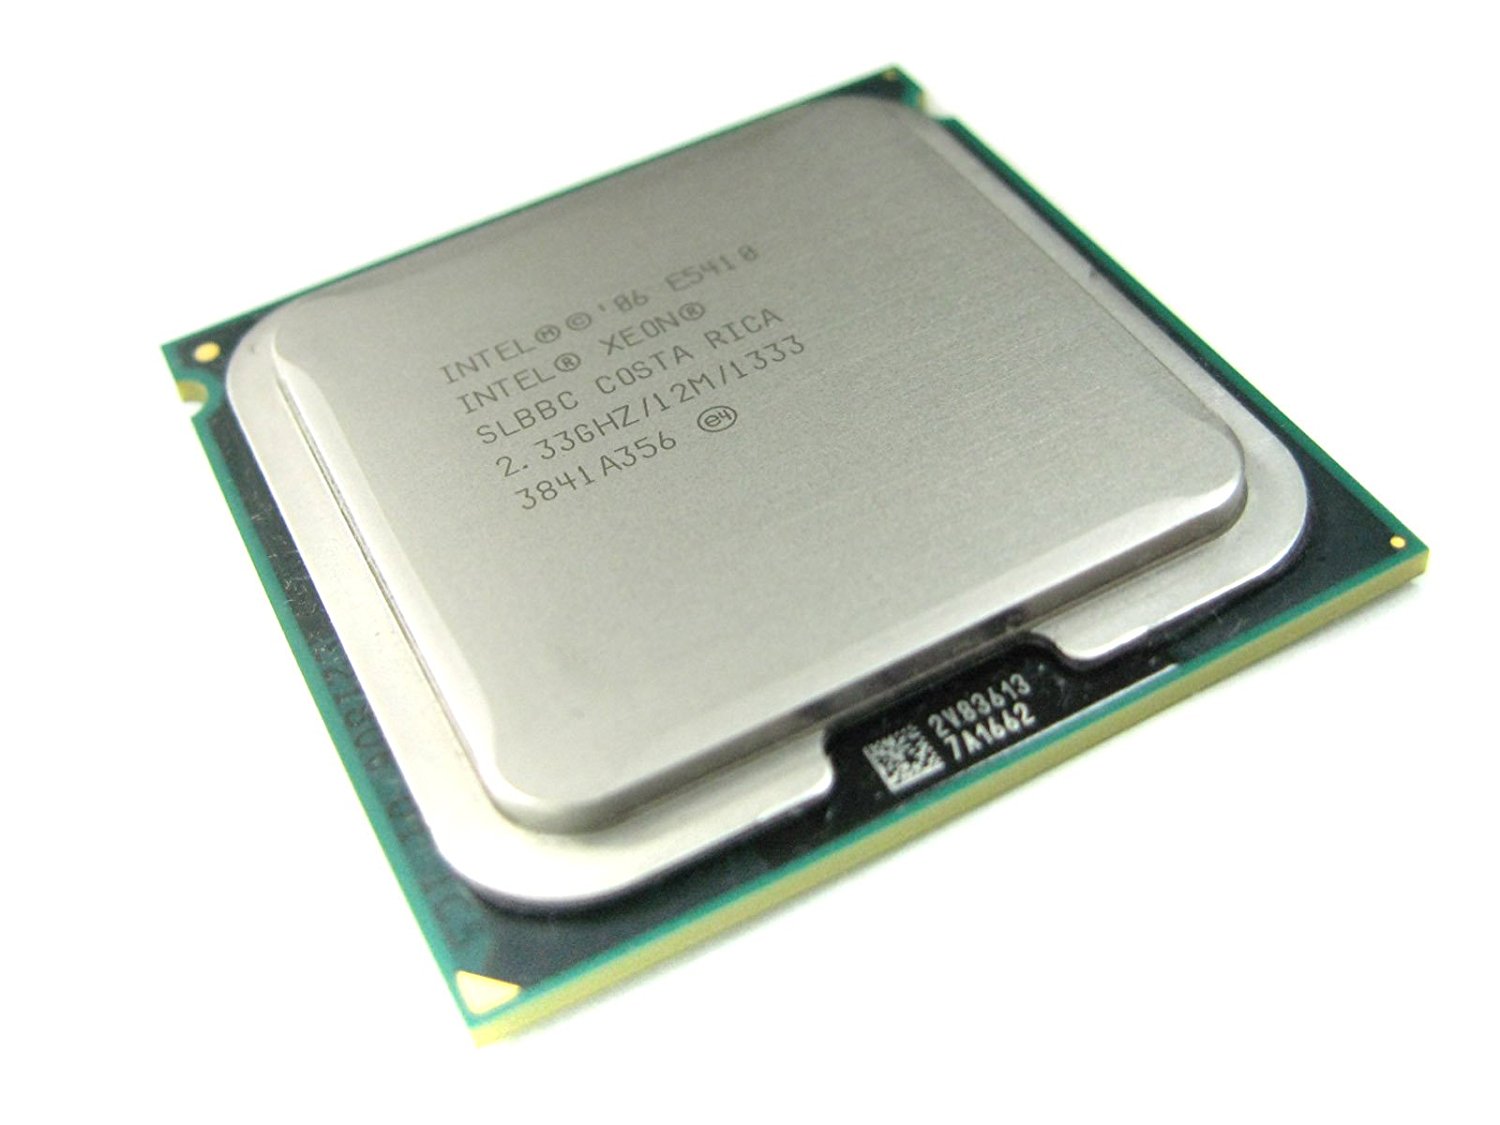 Intel SLBBC Xeon Quad-core E5410 2.33GHz 12MB Cache 1333MHz LGA771